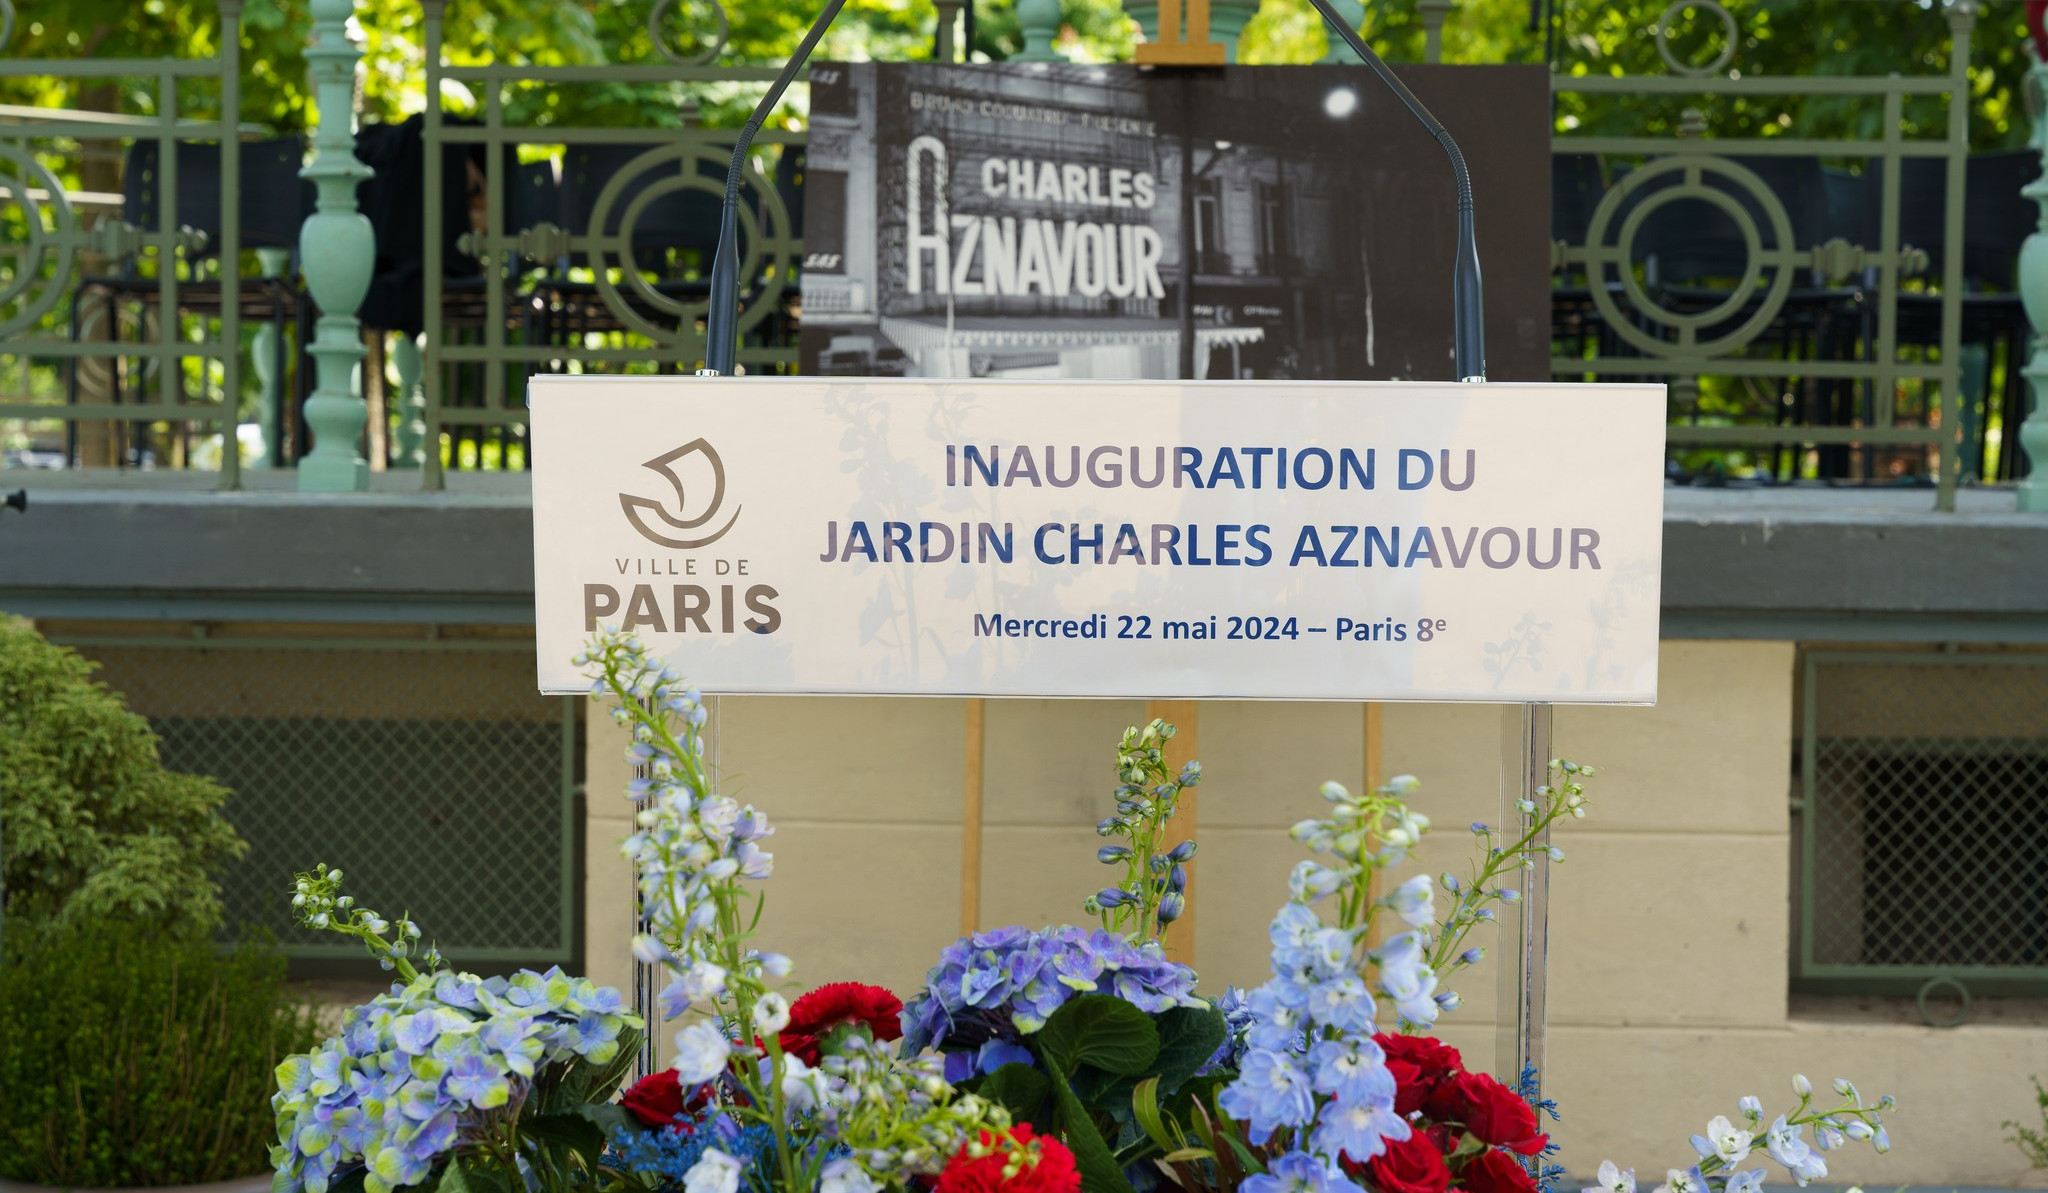 Փարիզի սրտում բացվեց Շառլ Ազնավուրի անվան պուրակ